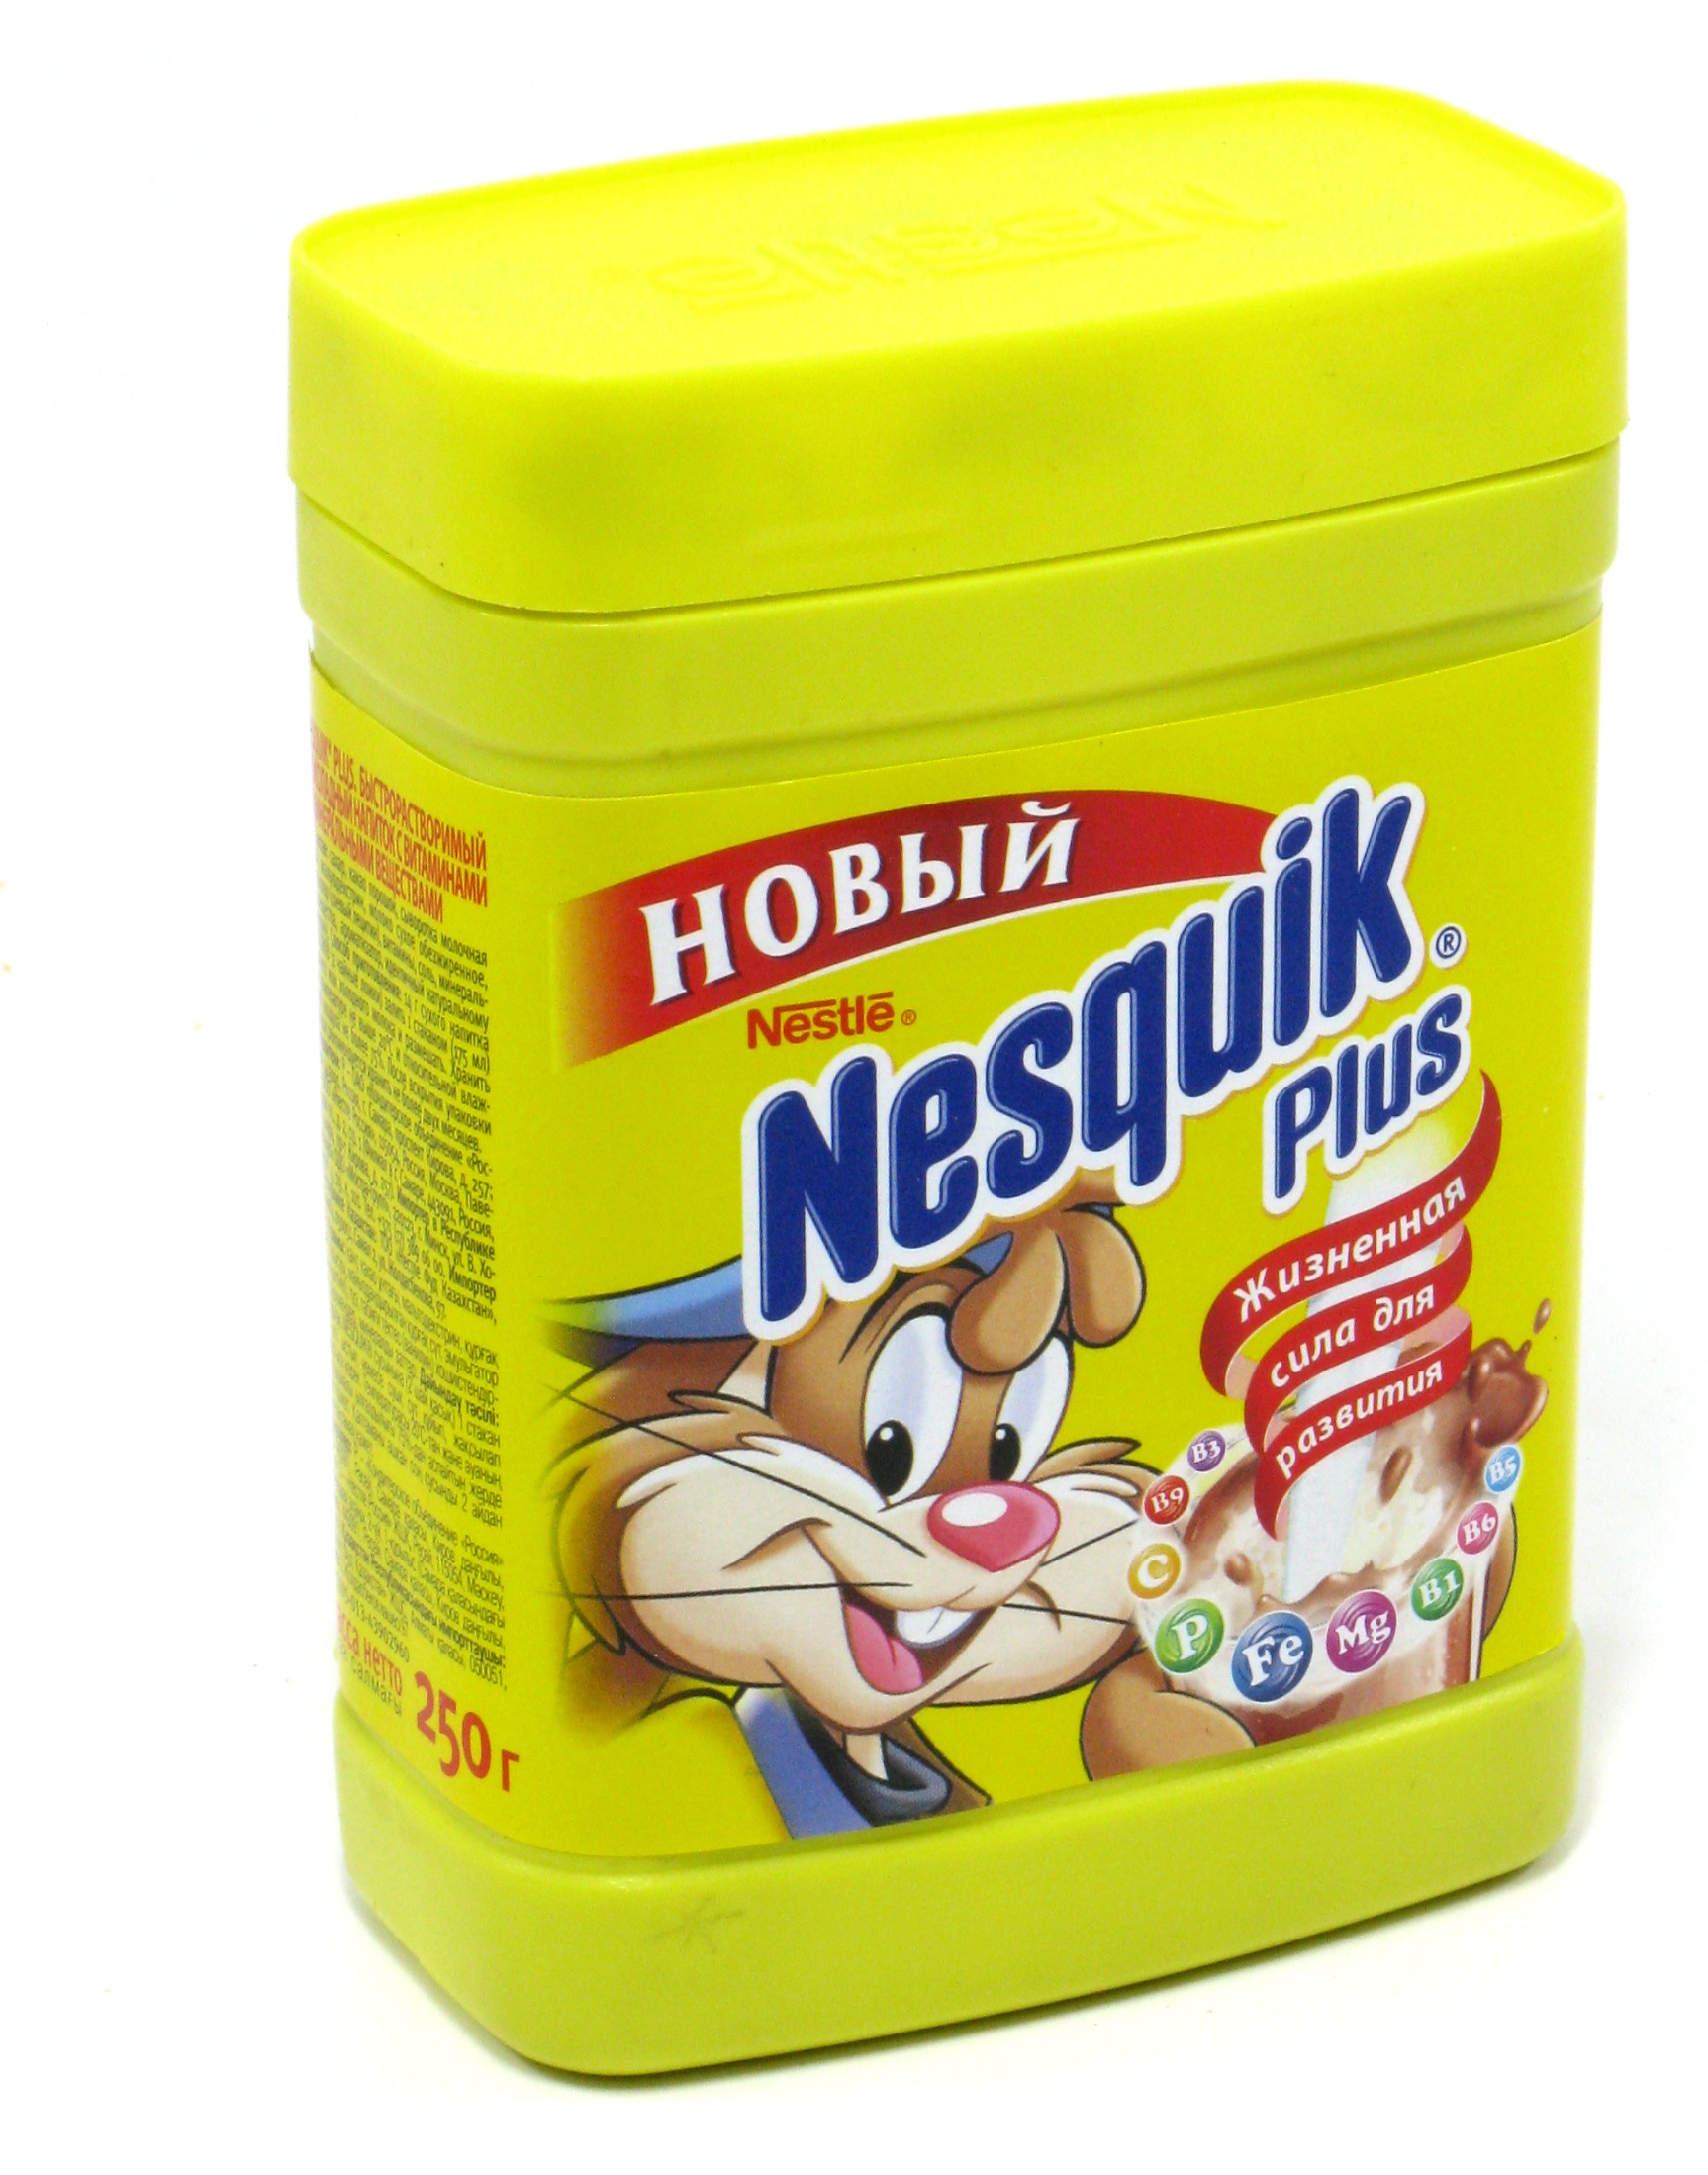 Отзыв про Растворимый шоколадный напиток Nesquik: 